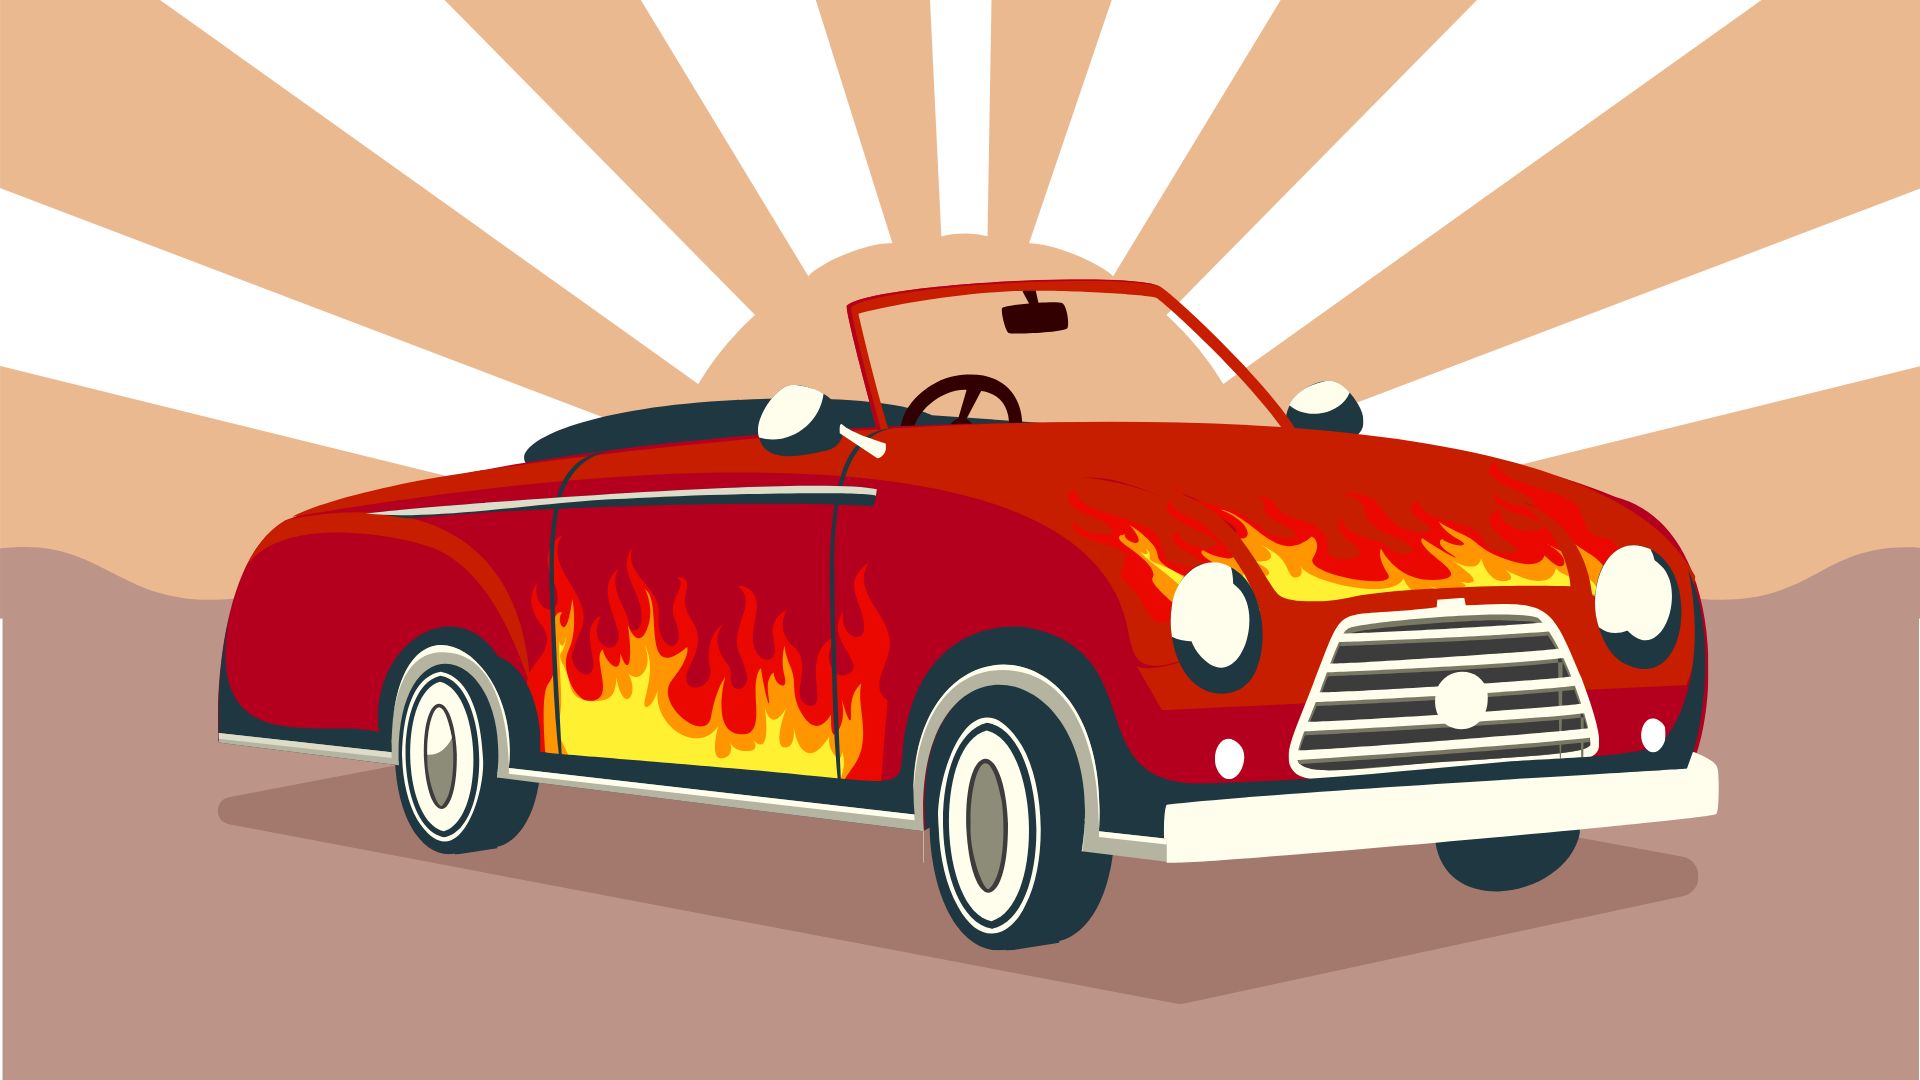 Free Cool Car Background in Illustrator, EPS, SVG, JPG, PNG